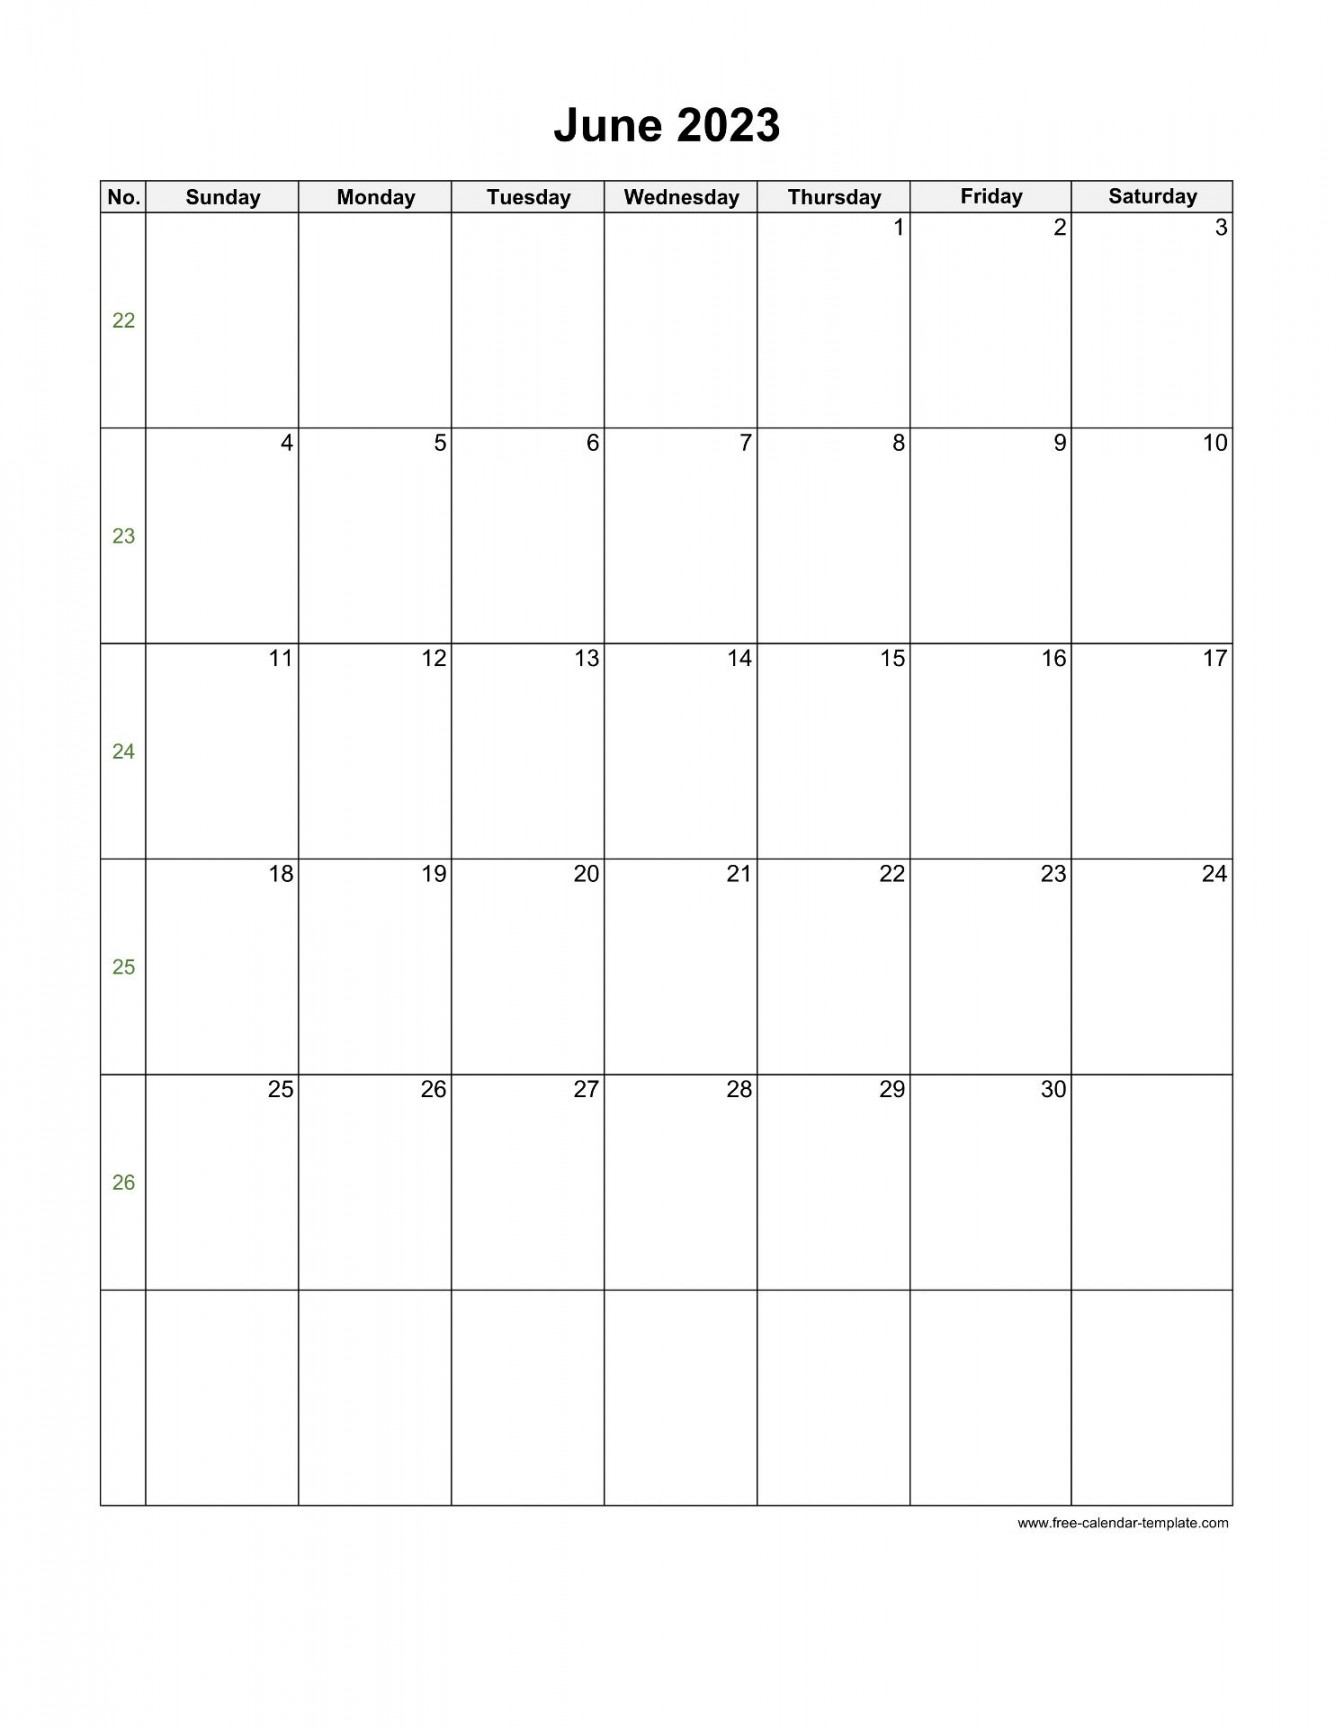 June Calendar (Blank Vertical Template)  Free-calendar